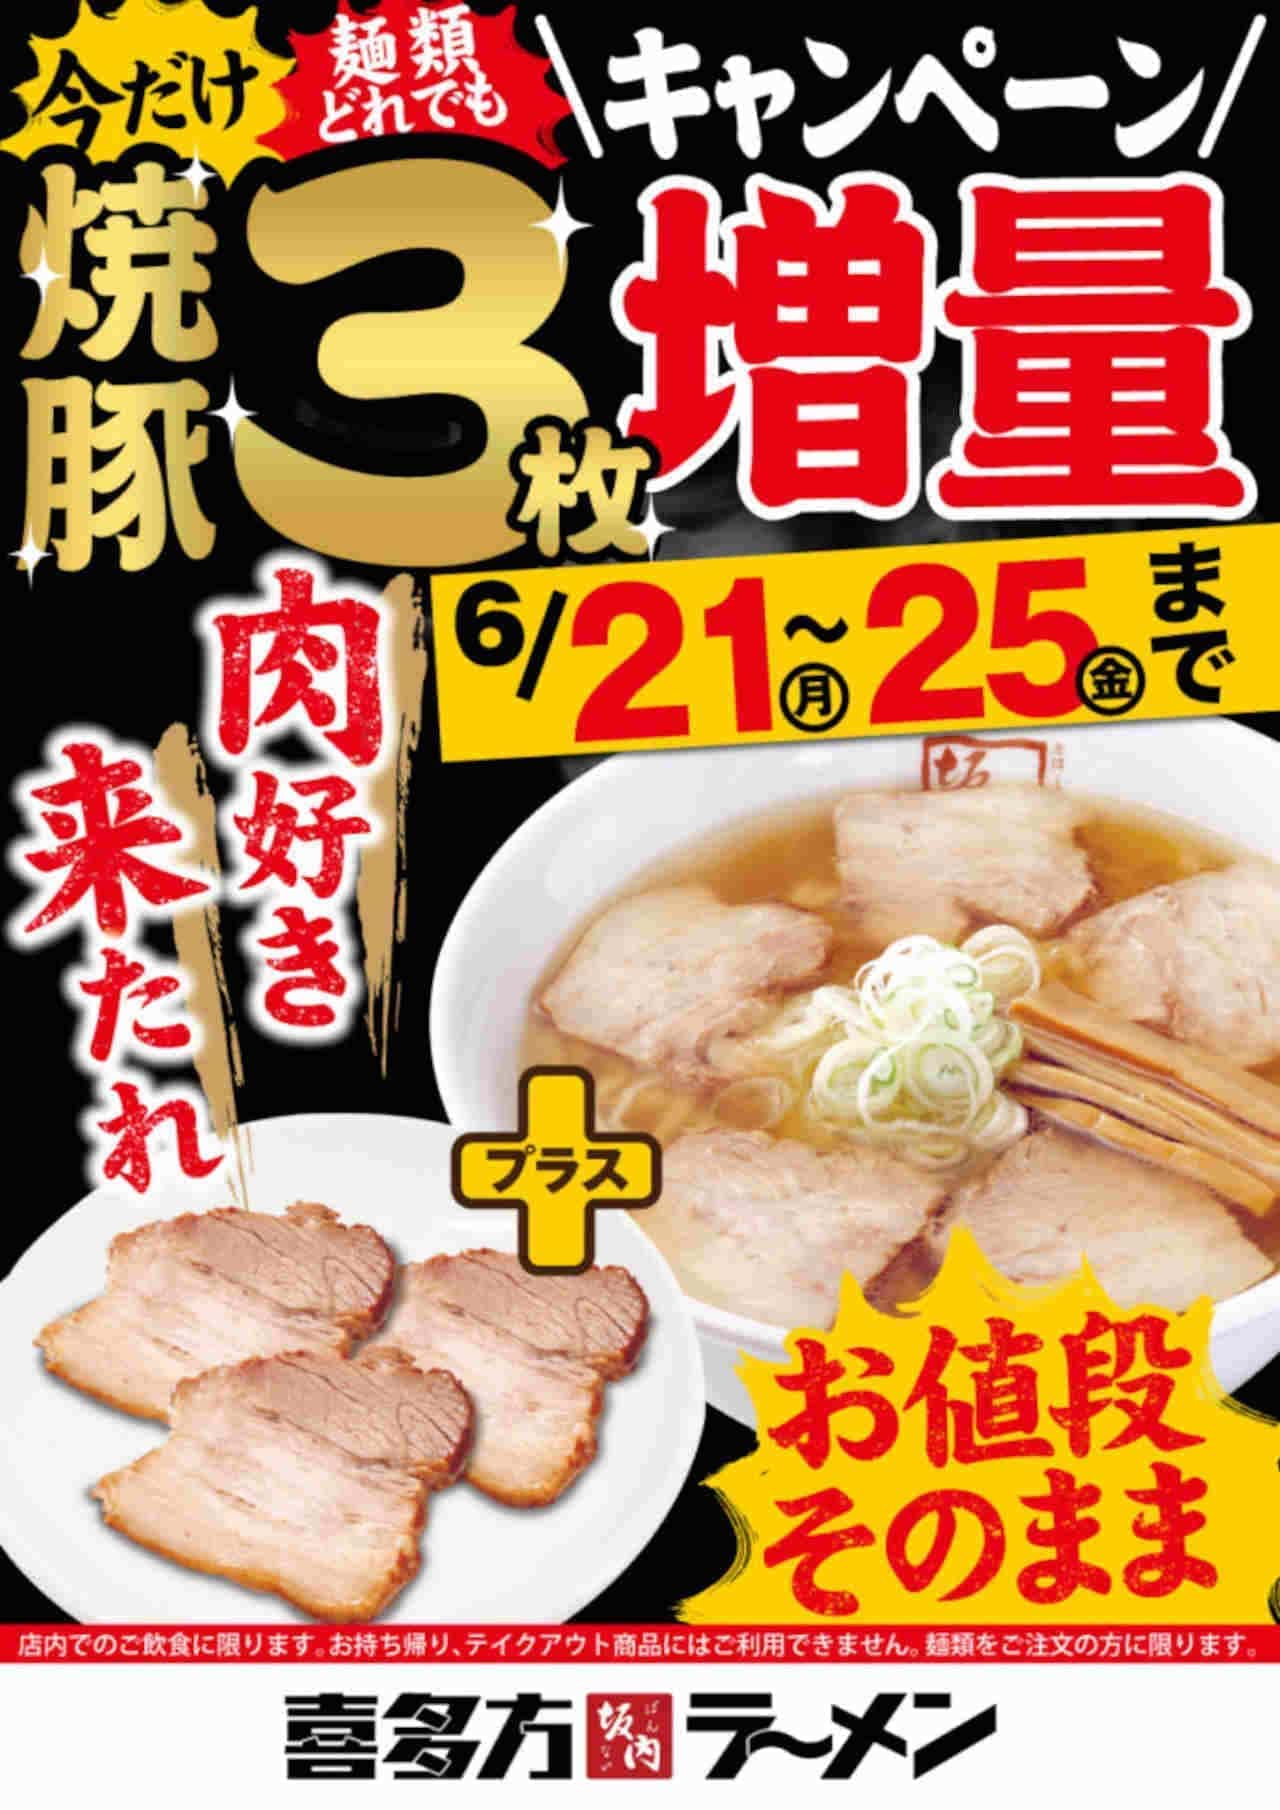 喜多方ラーメン坂内 “焼豚3枚増量キャンペーン” 